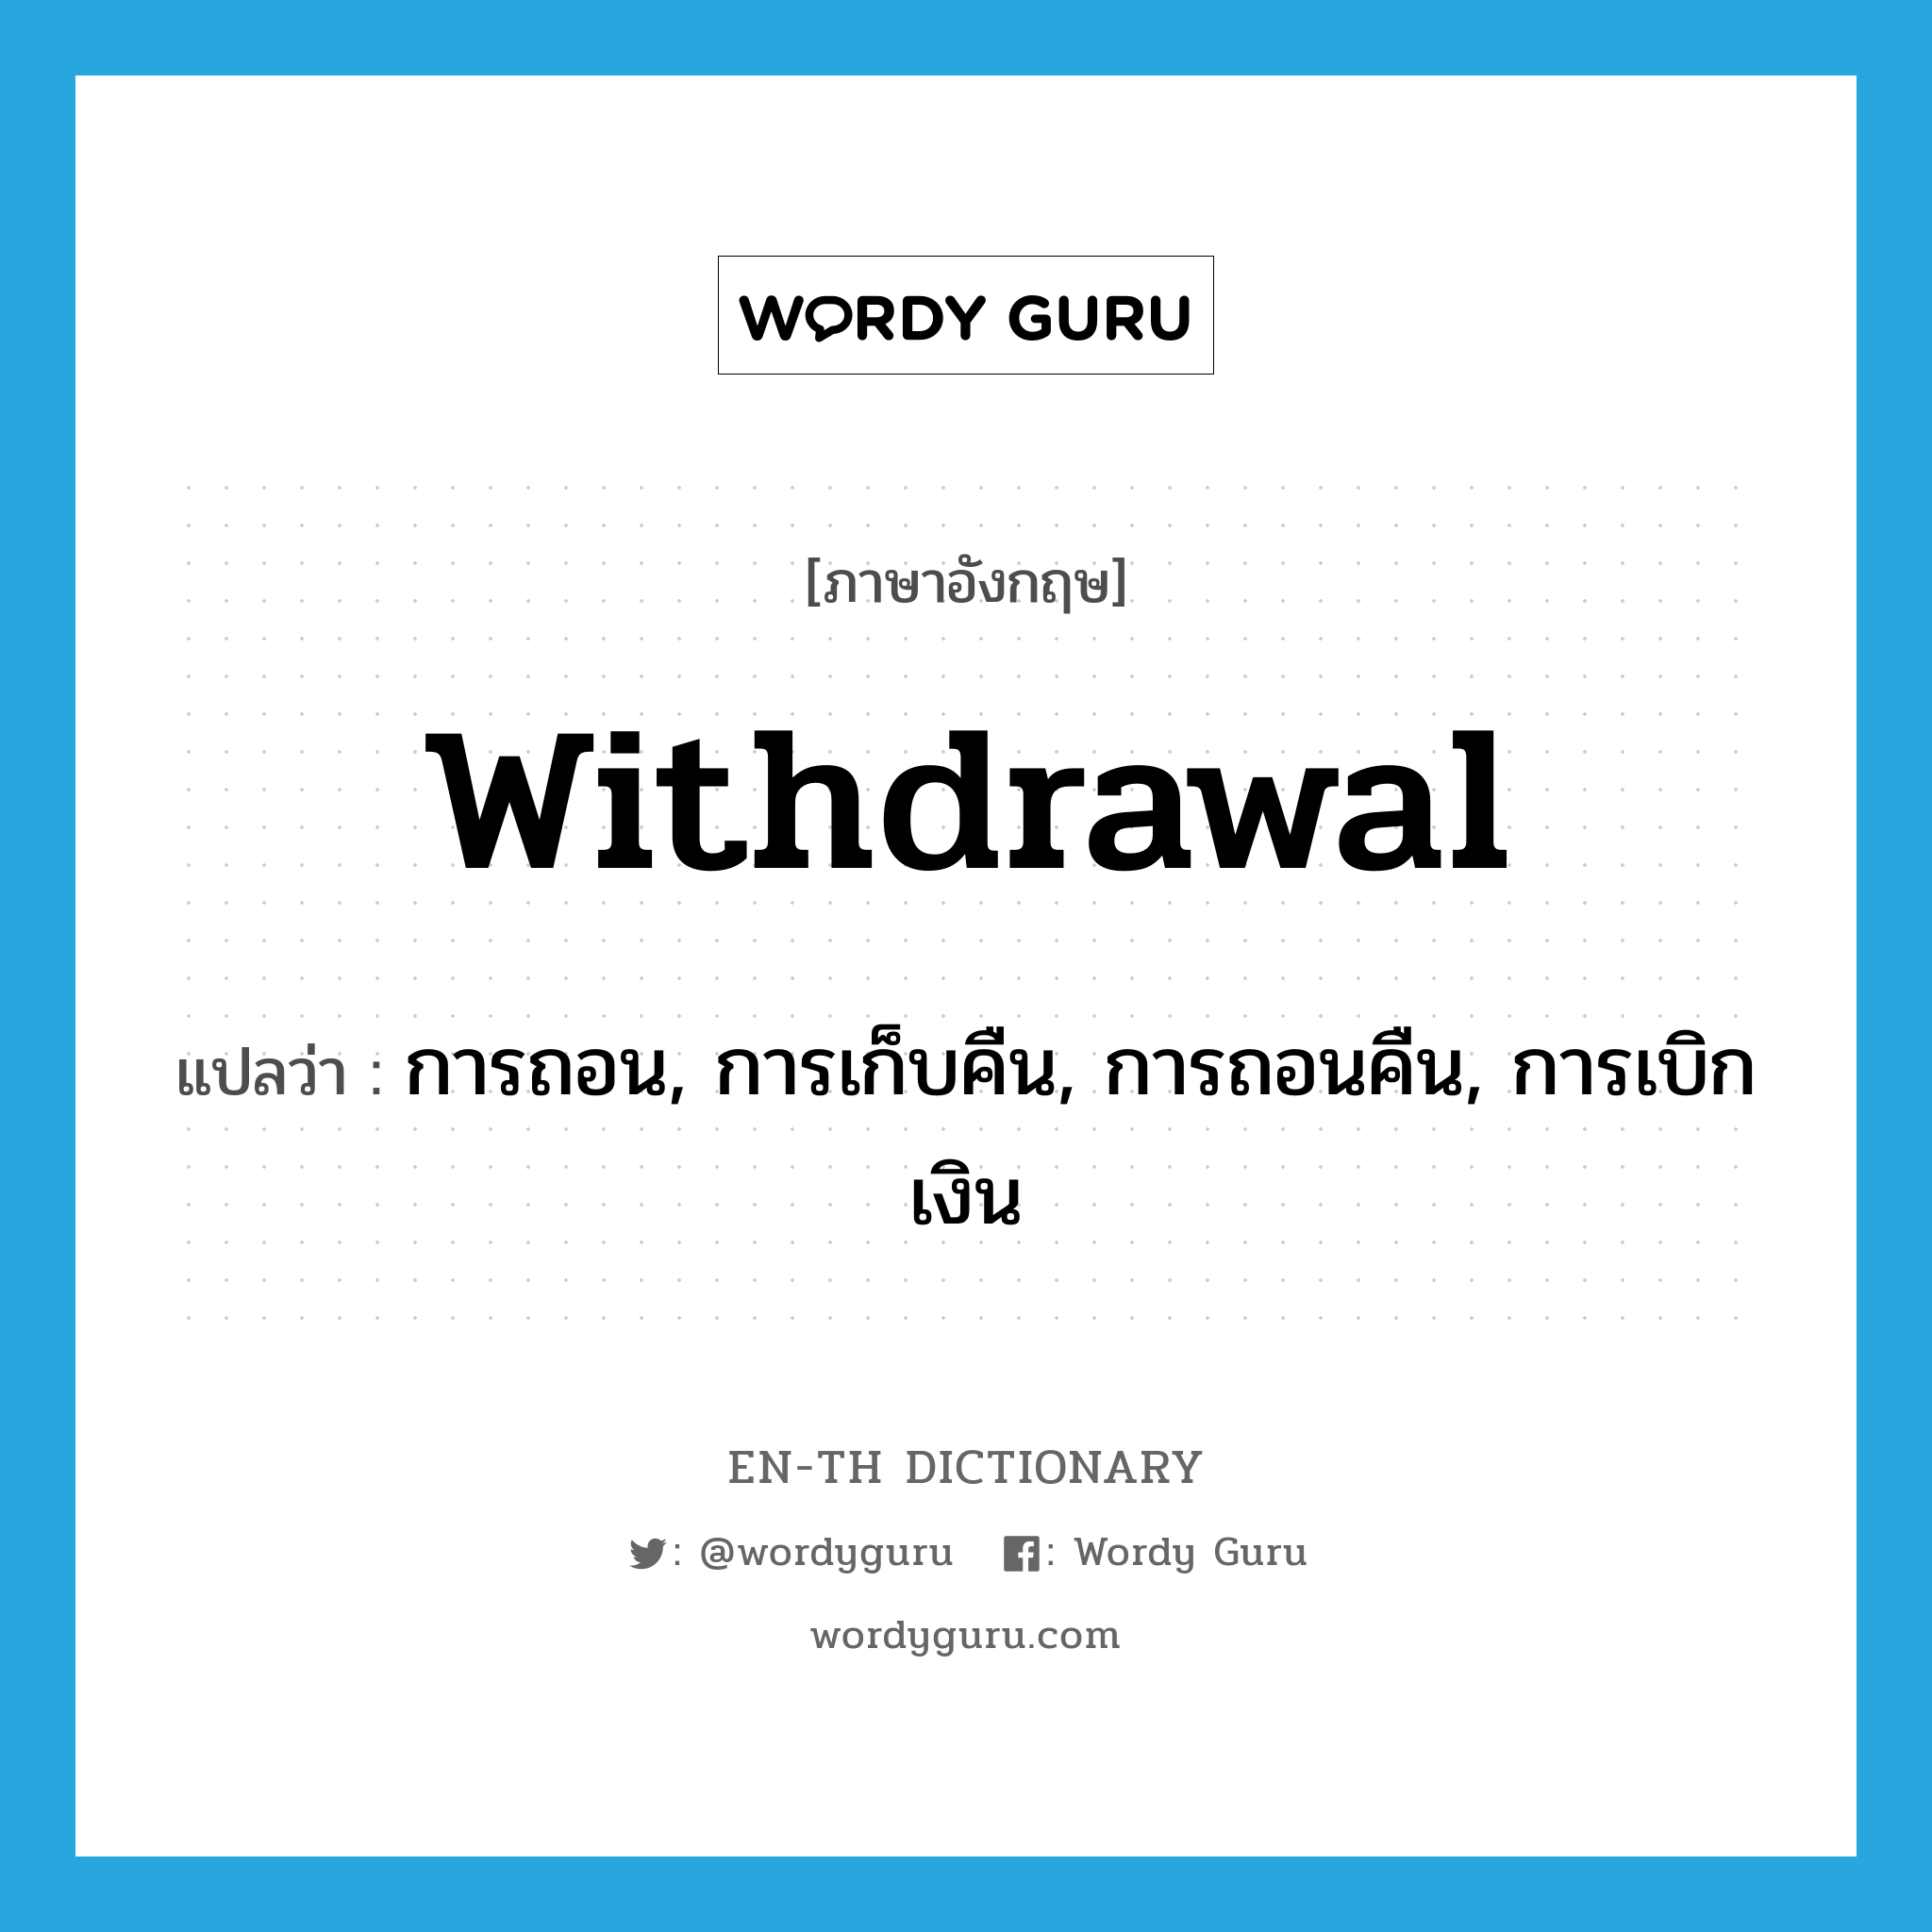 withdrawal แปลว่า?, คำศัพท์ภาษาอังกฤษ withdrawal แปลว่า การถอน, การเก็บคืน, การถอนคืน, การเบิกเงิน ประเภท N หมวด N